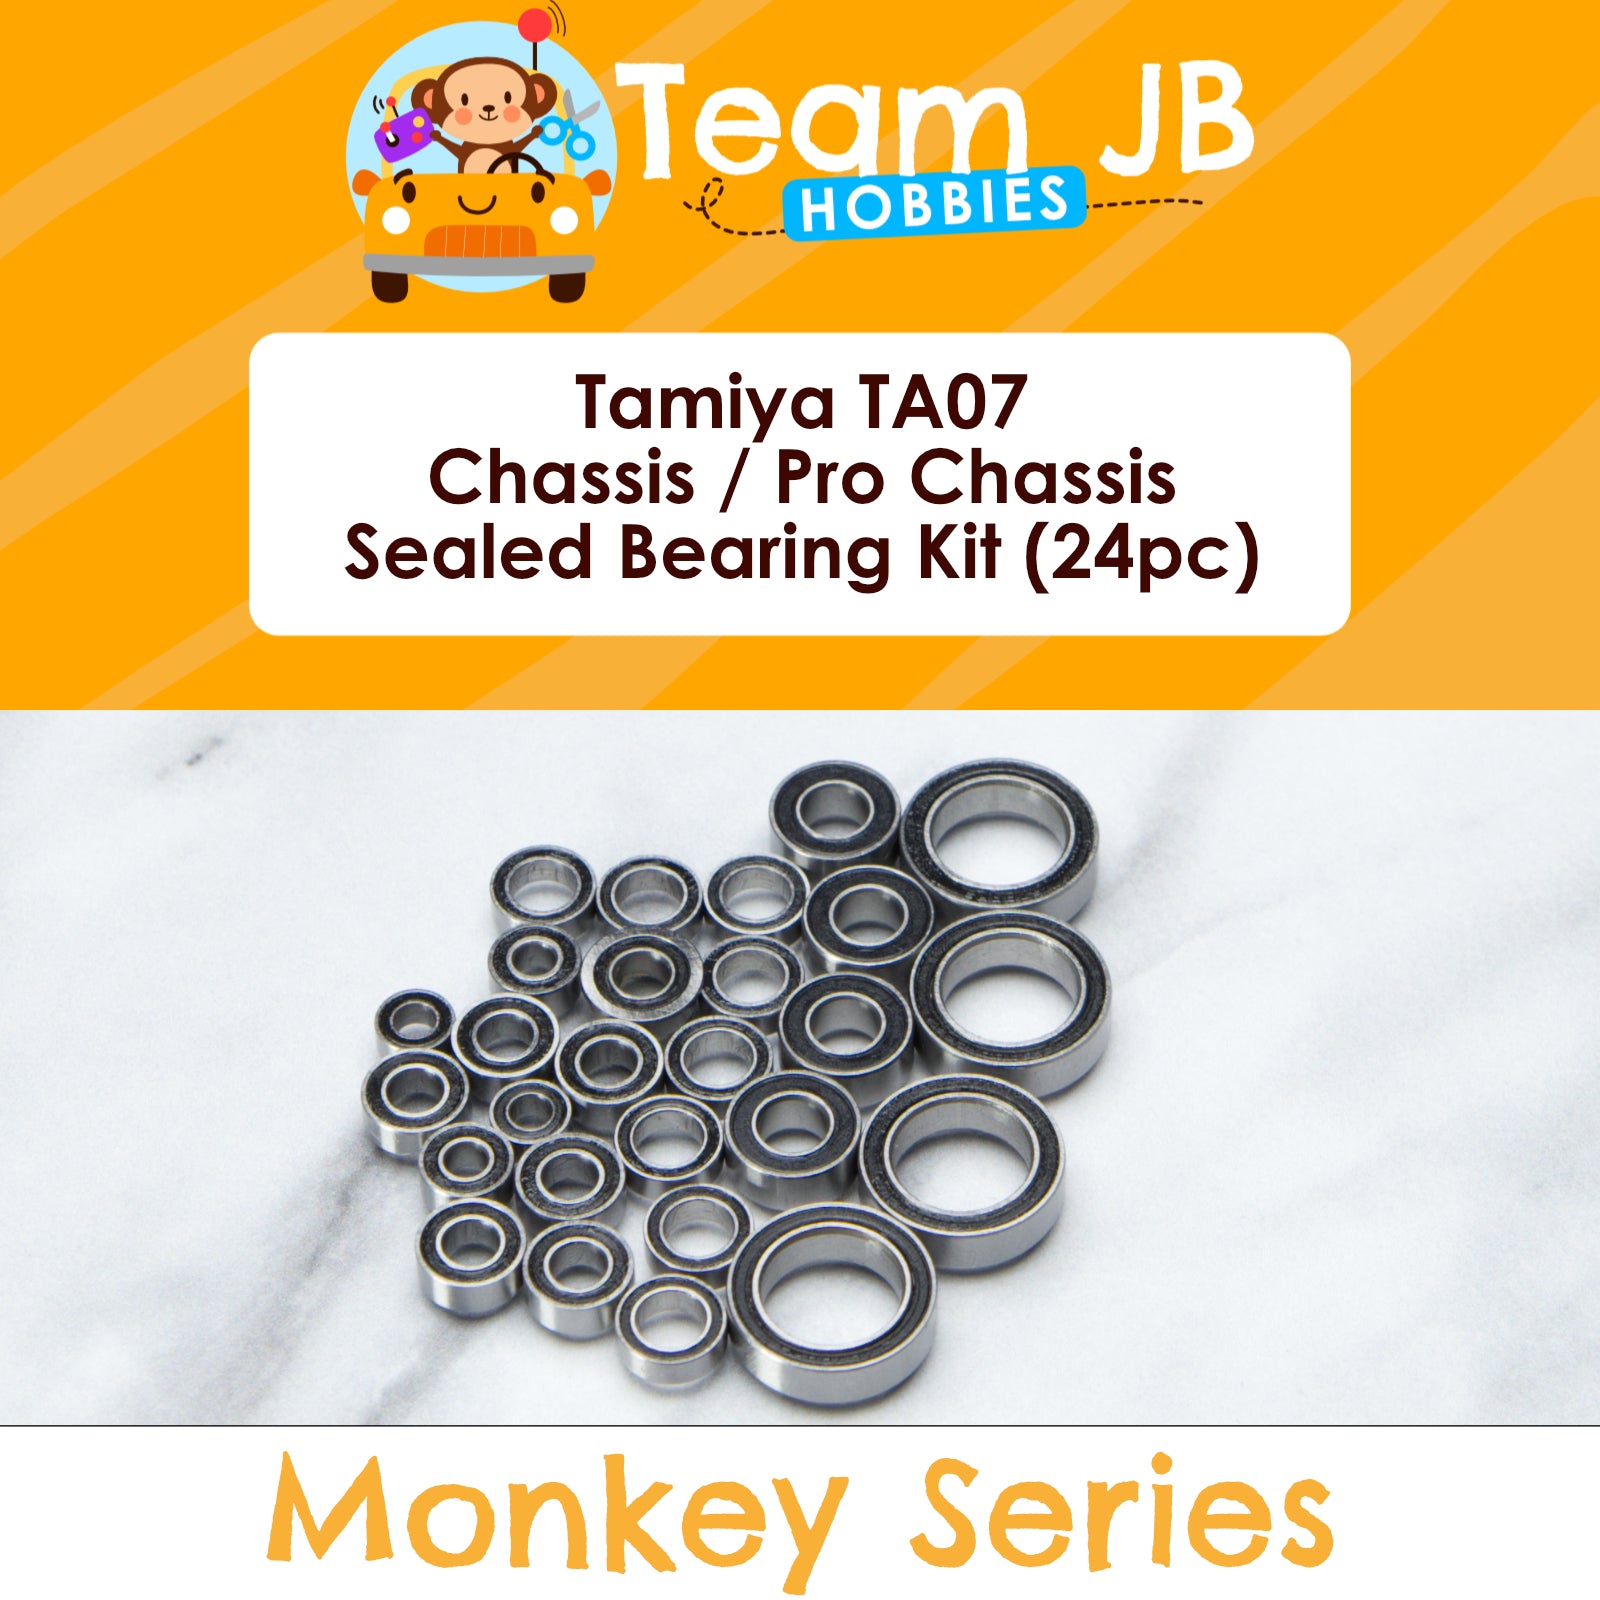 Tamiya TA07 - Chassis / Pro Chassis - Sealed Bearing Kit